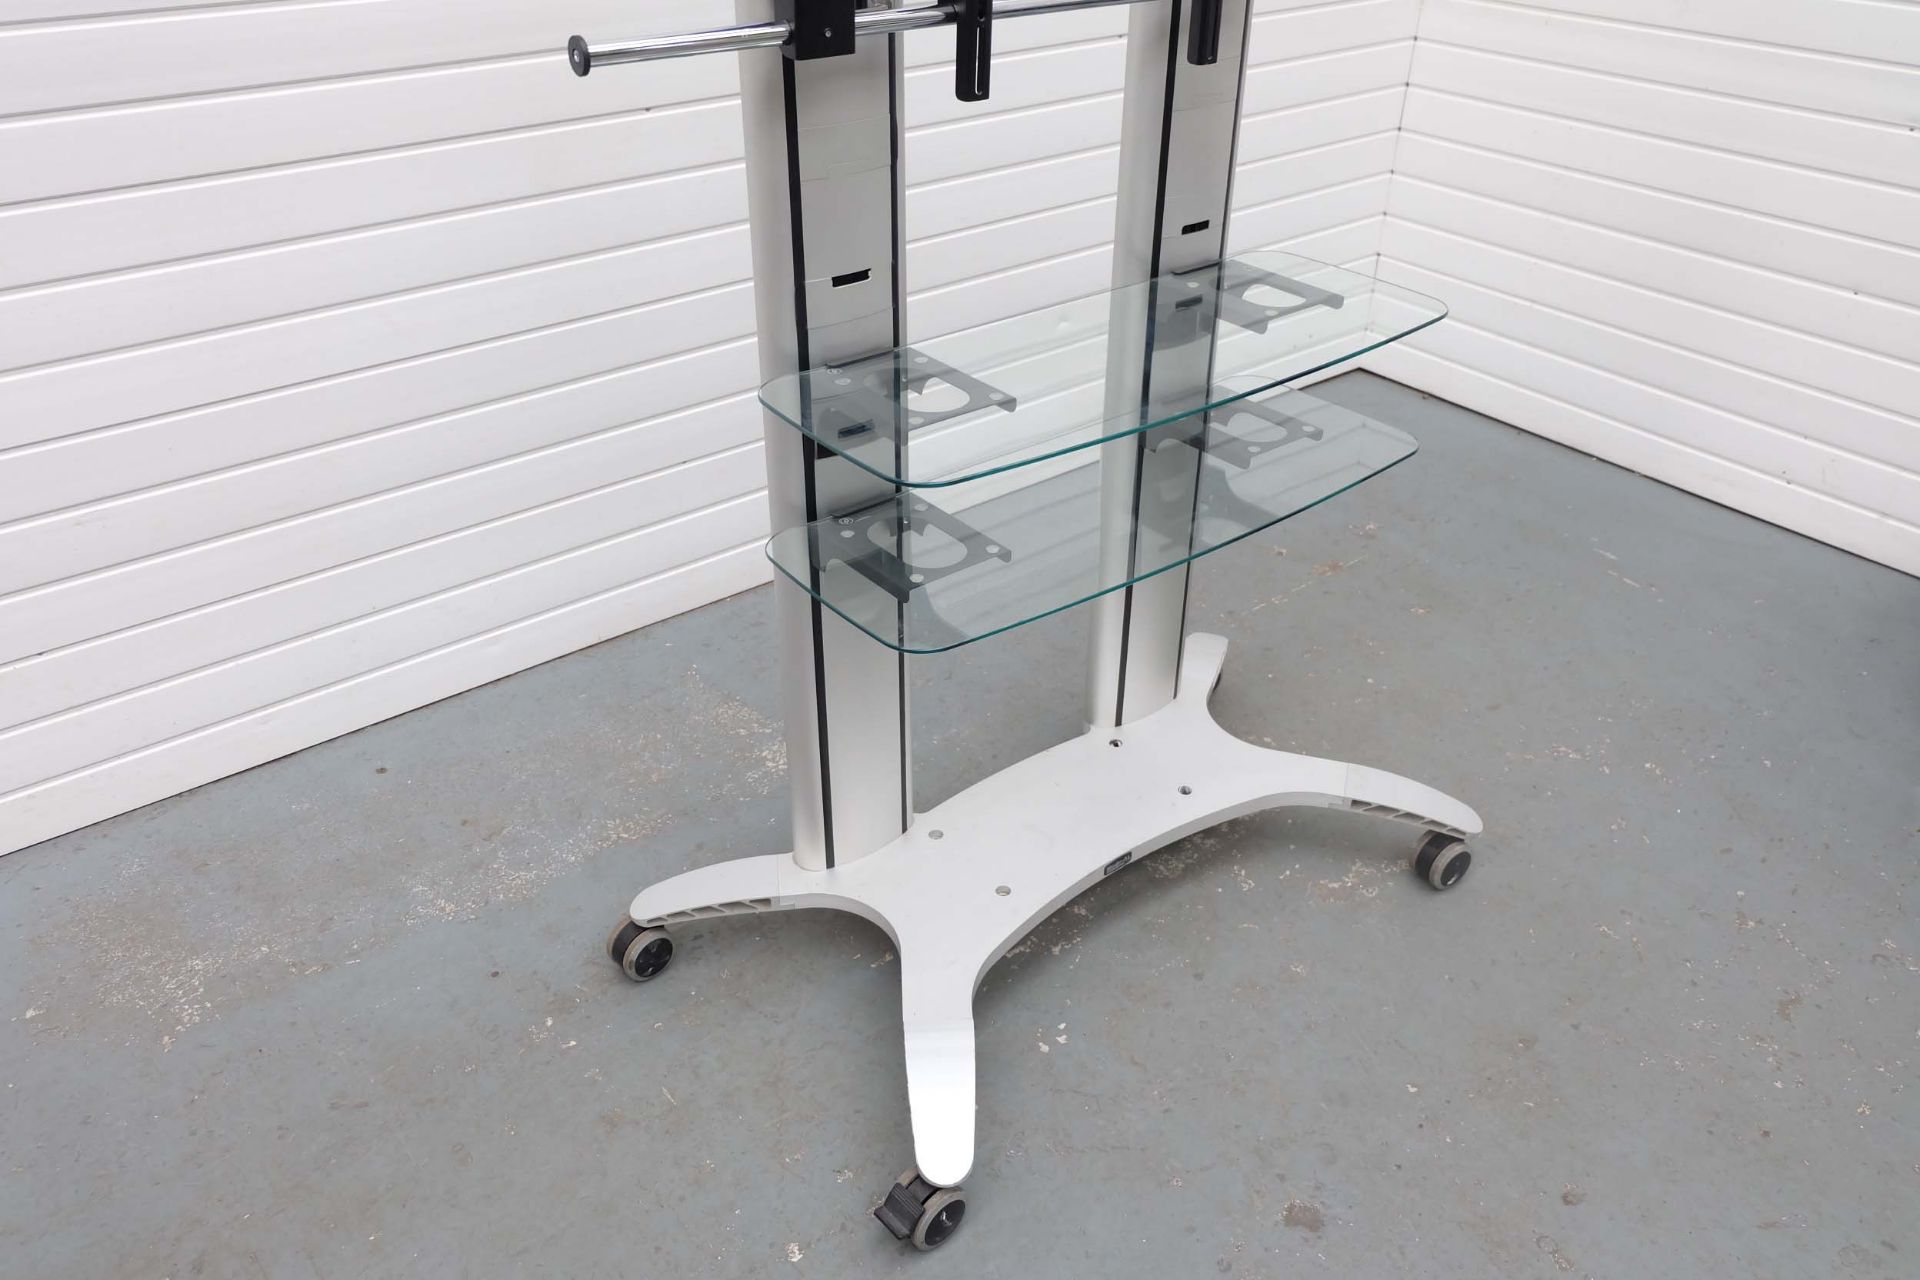 MODE-AL Exhibition T.V Media Stand on Wheels. 2 Glass Shelves. Adjustable T.V Bracket. Size 1100mm x - Image 2 of 6